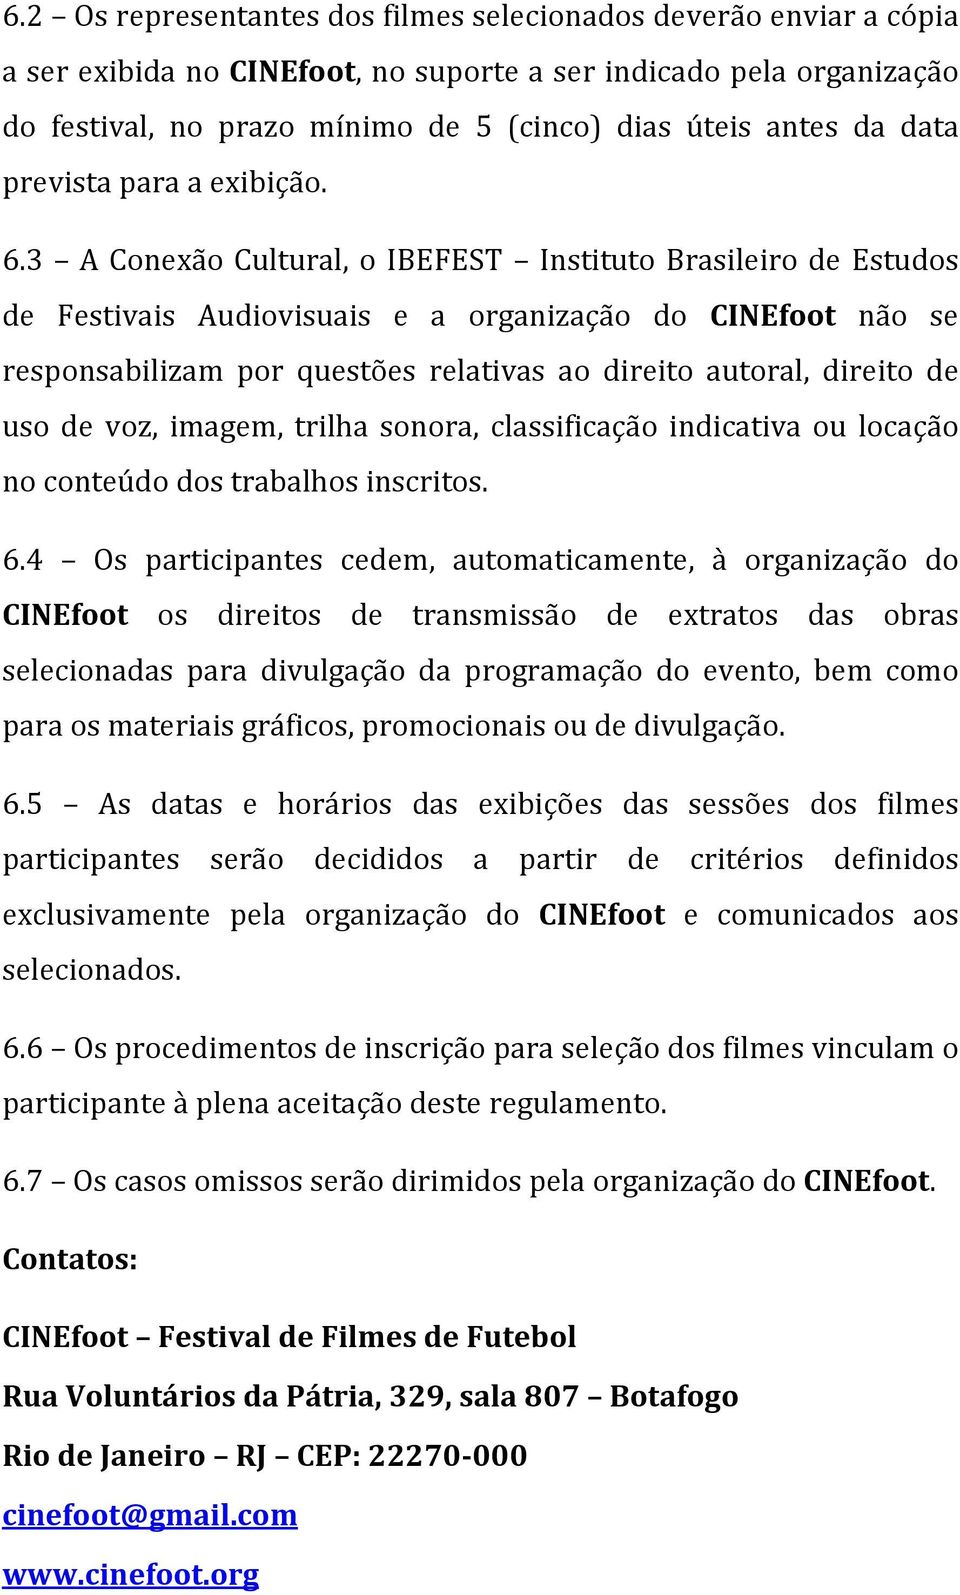 3 A Conexão Cultural, o IBEFEST Instituto Brasileiro de Estudos de Festivais Audiovisuais e a organização do CINEfoot não se responsabilizam por questões relativas ao direito autoral, direito de uso